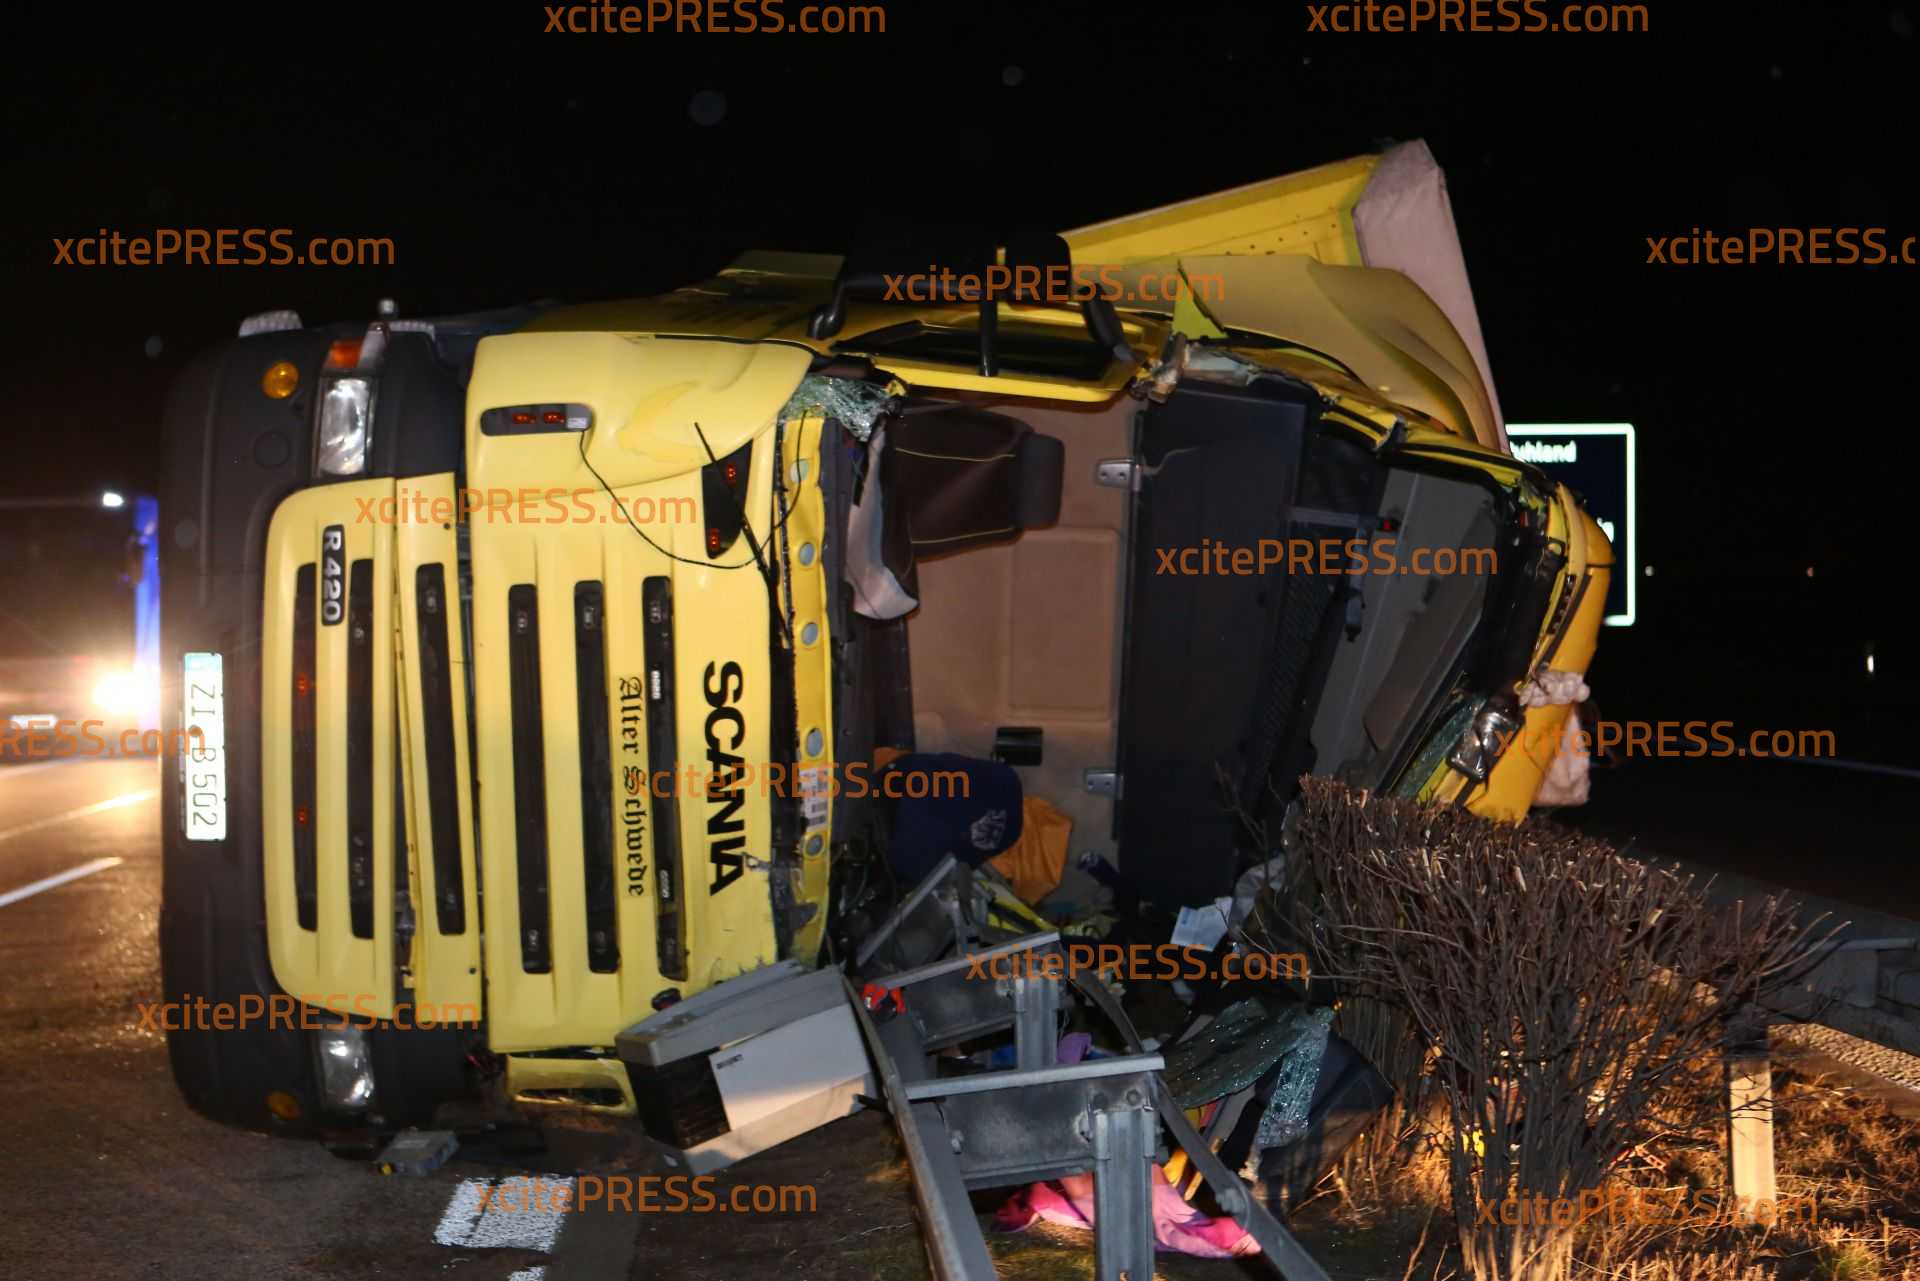 Orkantoter in Brandenburg: LKW kippt um: Fahrer eingeklemmt, im Führerhaus verstorben